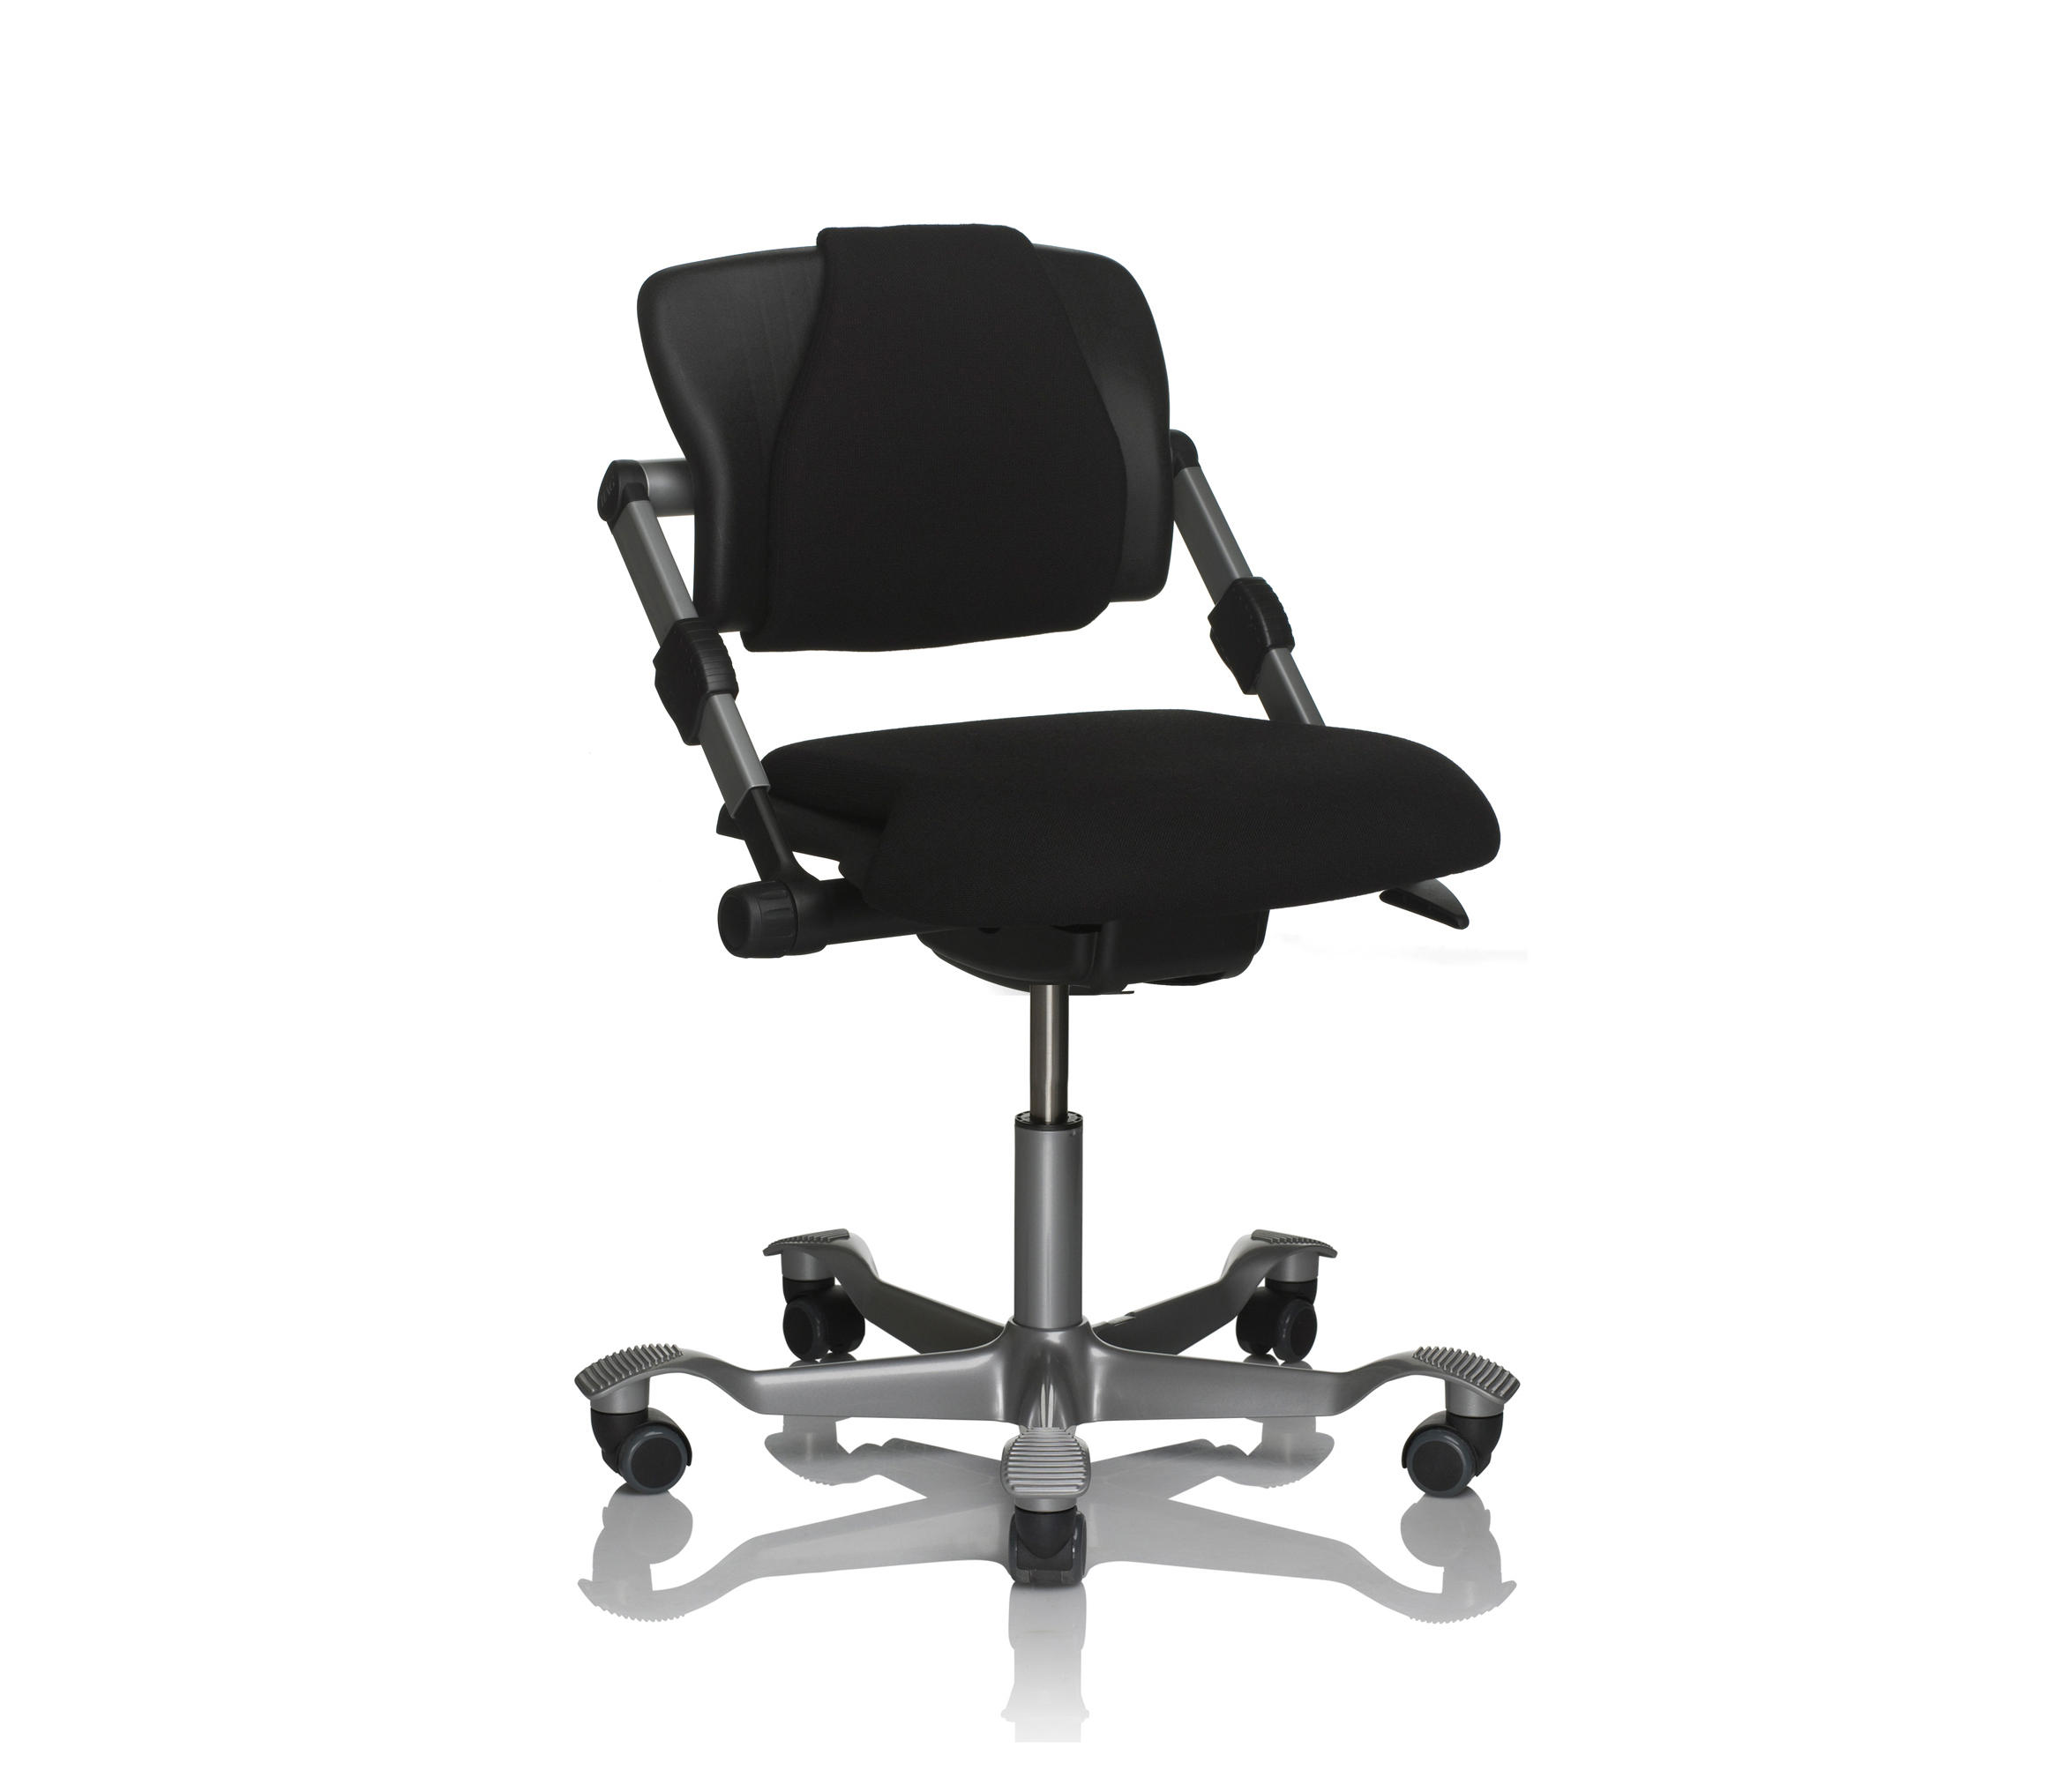 Офисное кресло до 150 кг. Кресло для руководителей иск.кожа + ткань черный крестовина хром FX-139. Кресло ERGOLIFE sit 10. Cx0395h кресло. Компактный офисный стул.